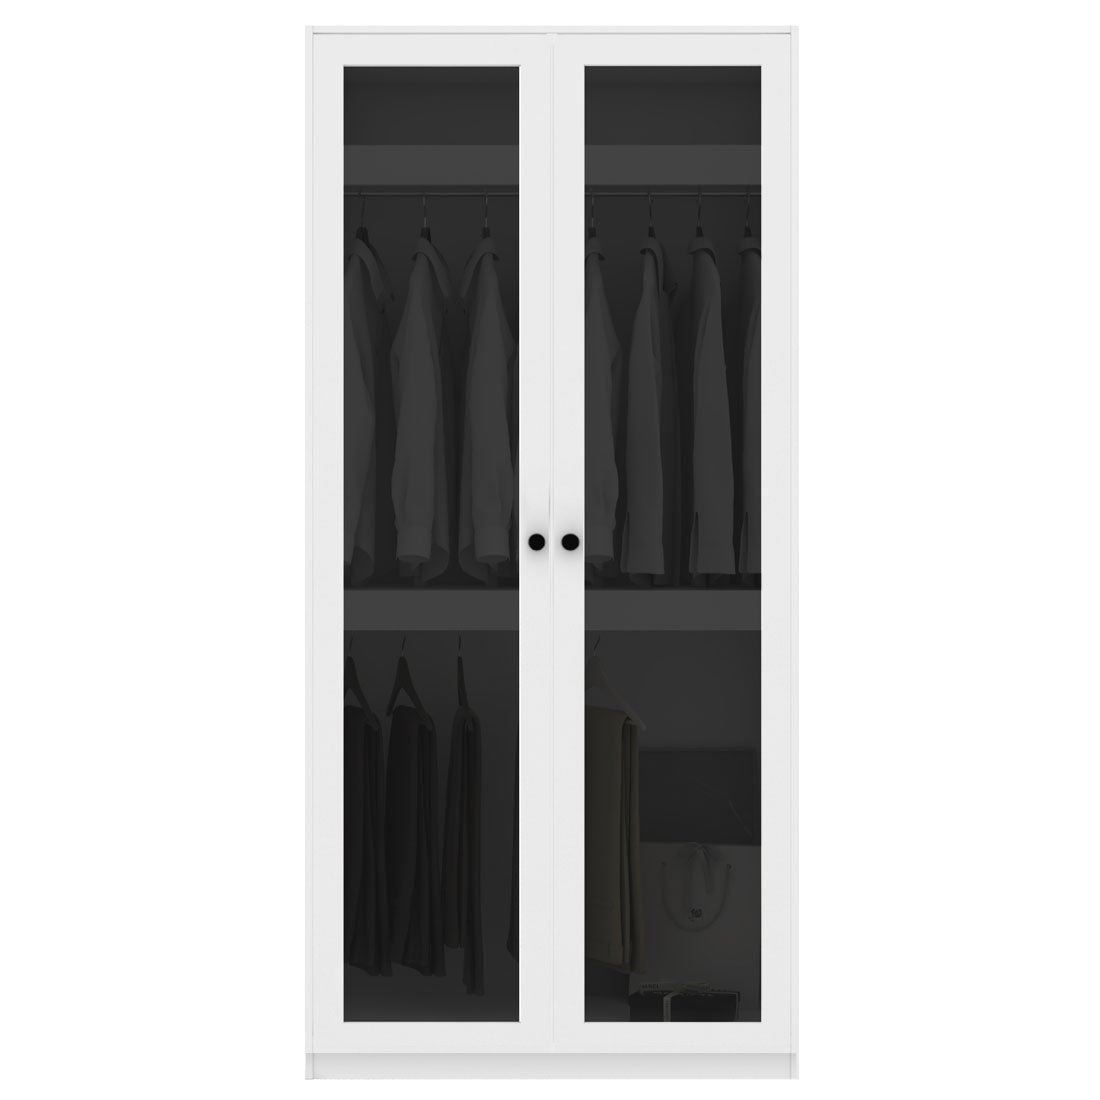 ตู้เสื้อผ้า แขวนบน-ล่าง OP-B ขนาด 100 ซม. รุ่น Blox สีขาว&กระจกชา1